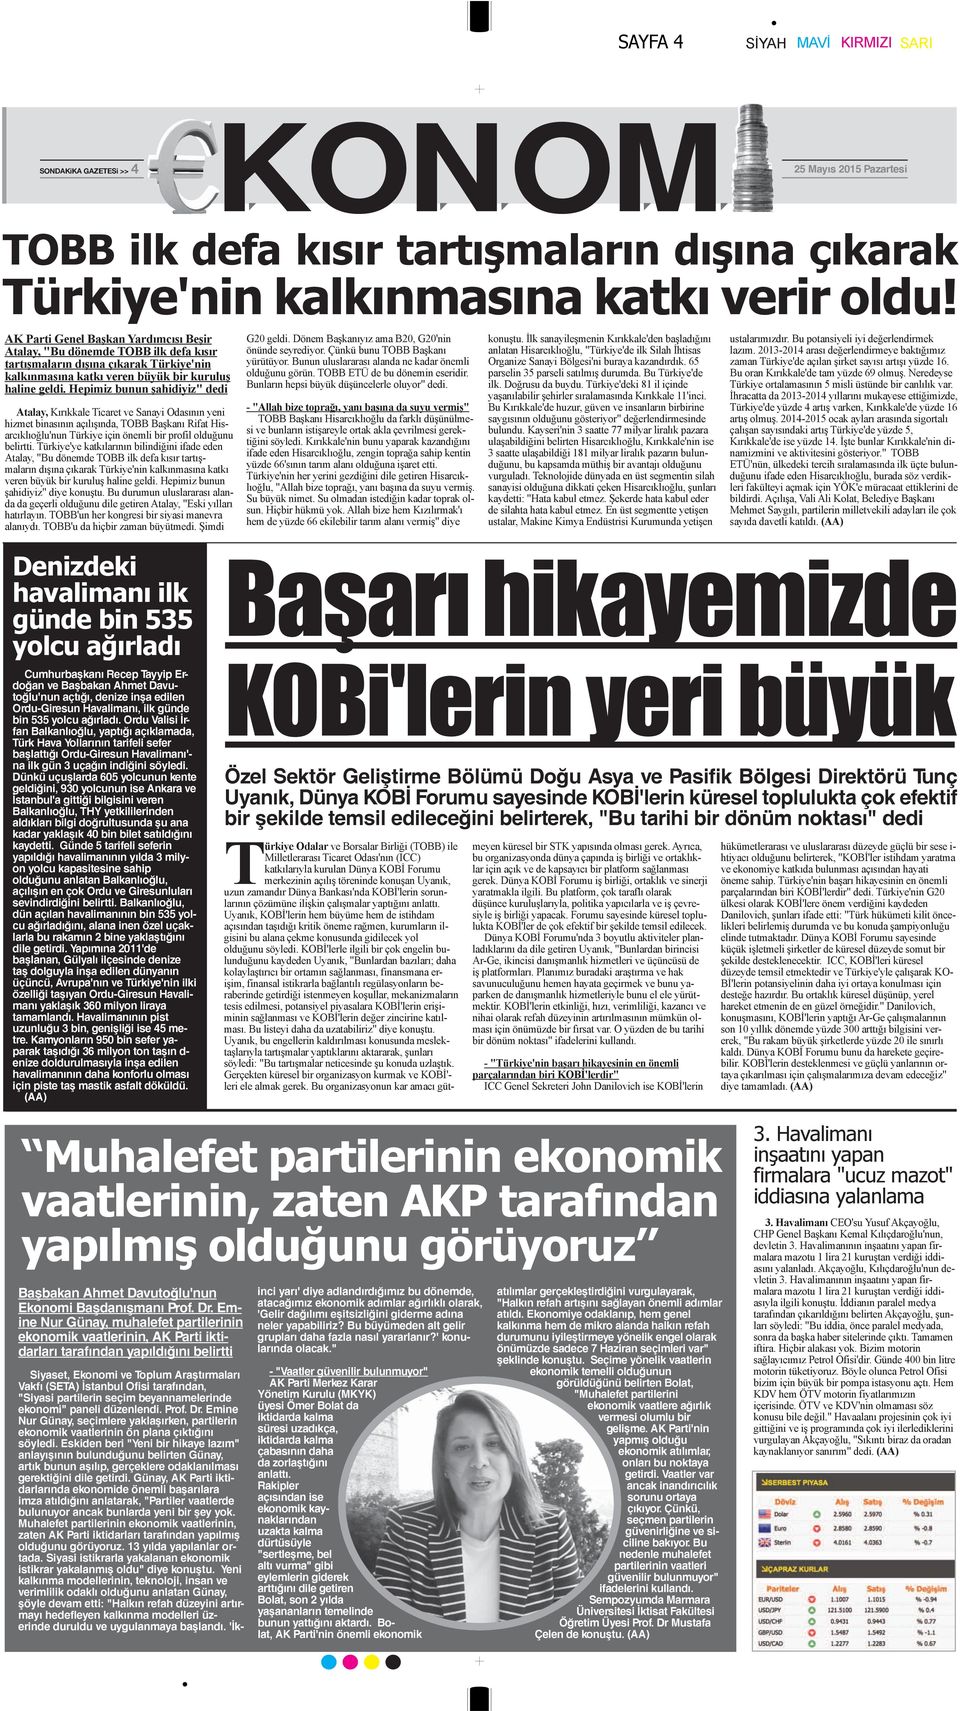 Hepimiz bunun şahidiyiz" dedi Atalay, Kırıkkale Ticaret ve Sanayi Odasının yeni hizmet binasının açılışında, TOBB Başkanı Rifat Hisarcıklıoğlu'nun Türkiye için önemli bir profil olduğunu belirtti.